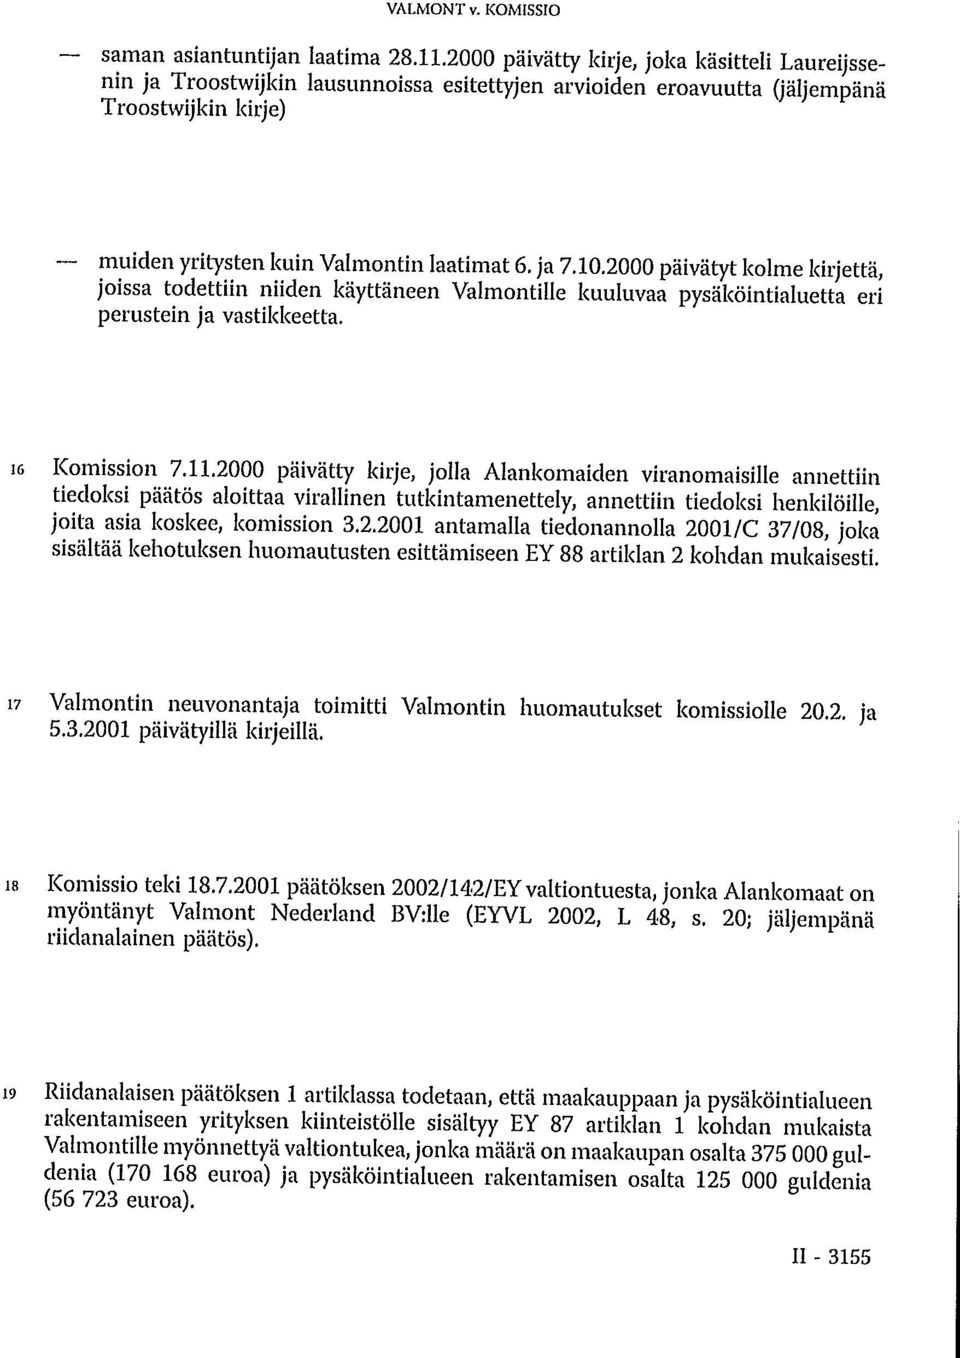 2000 päivätyt kolme kirjettä, joissa todettiin niiden käyttäneen Valmontille kuuluvaa pysäköintialuetta eri perustein ja vastikkeetta. 16 Komission 7.11.